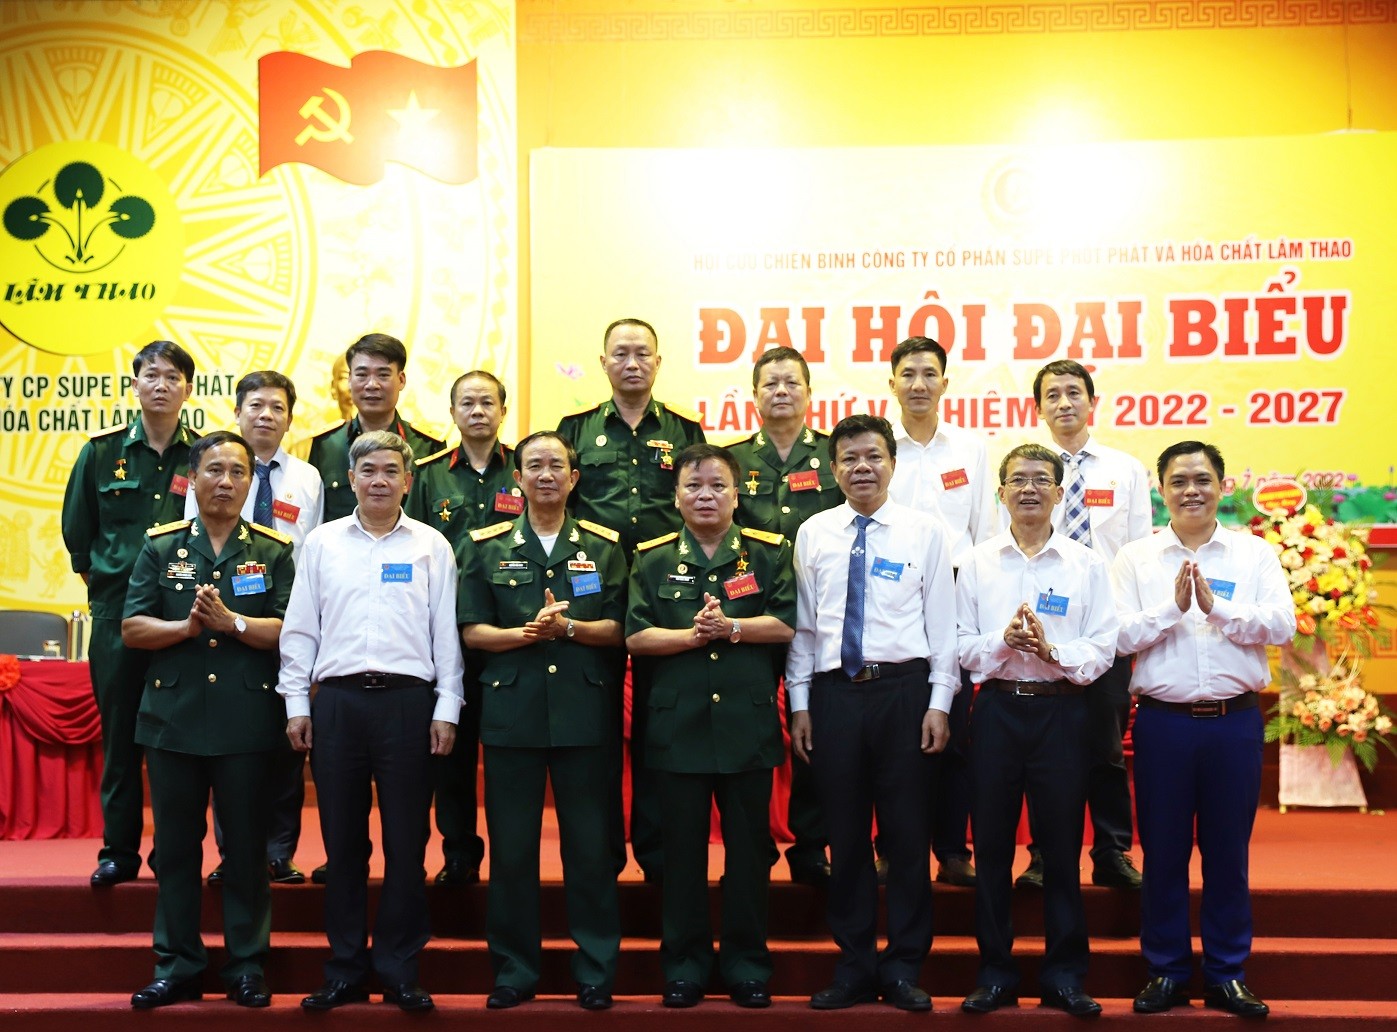 Đại hội đại biểu Hội Cựu chiến binh Công ty CP Supe Phốt phát và Hóa chất Lâm Thao lần thứ V, nhiệm kỳ 2022-2027